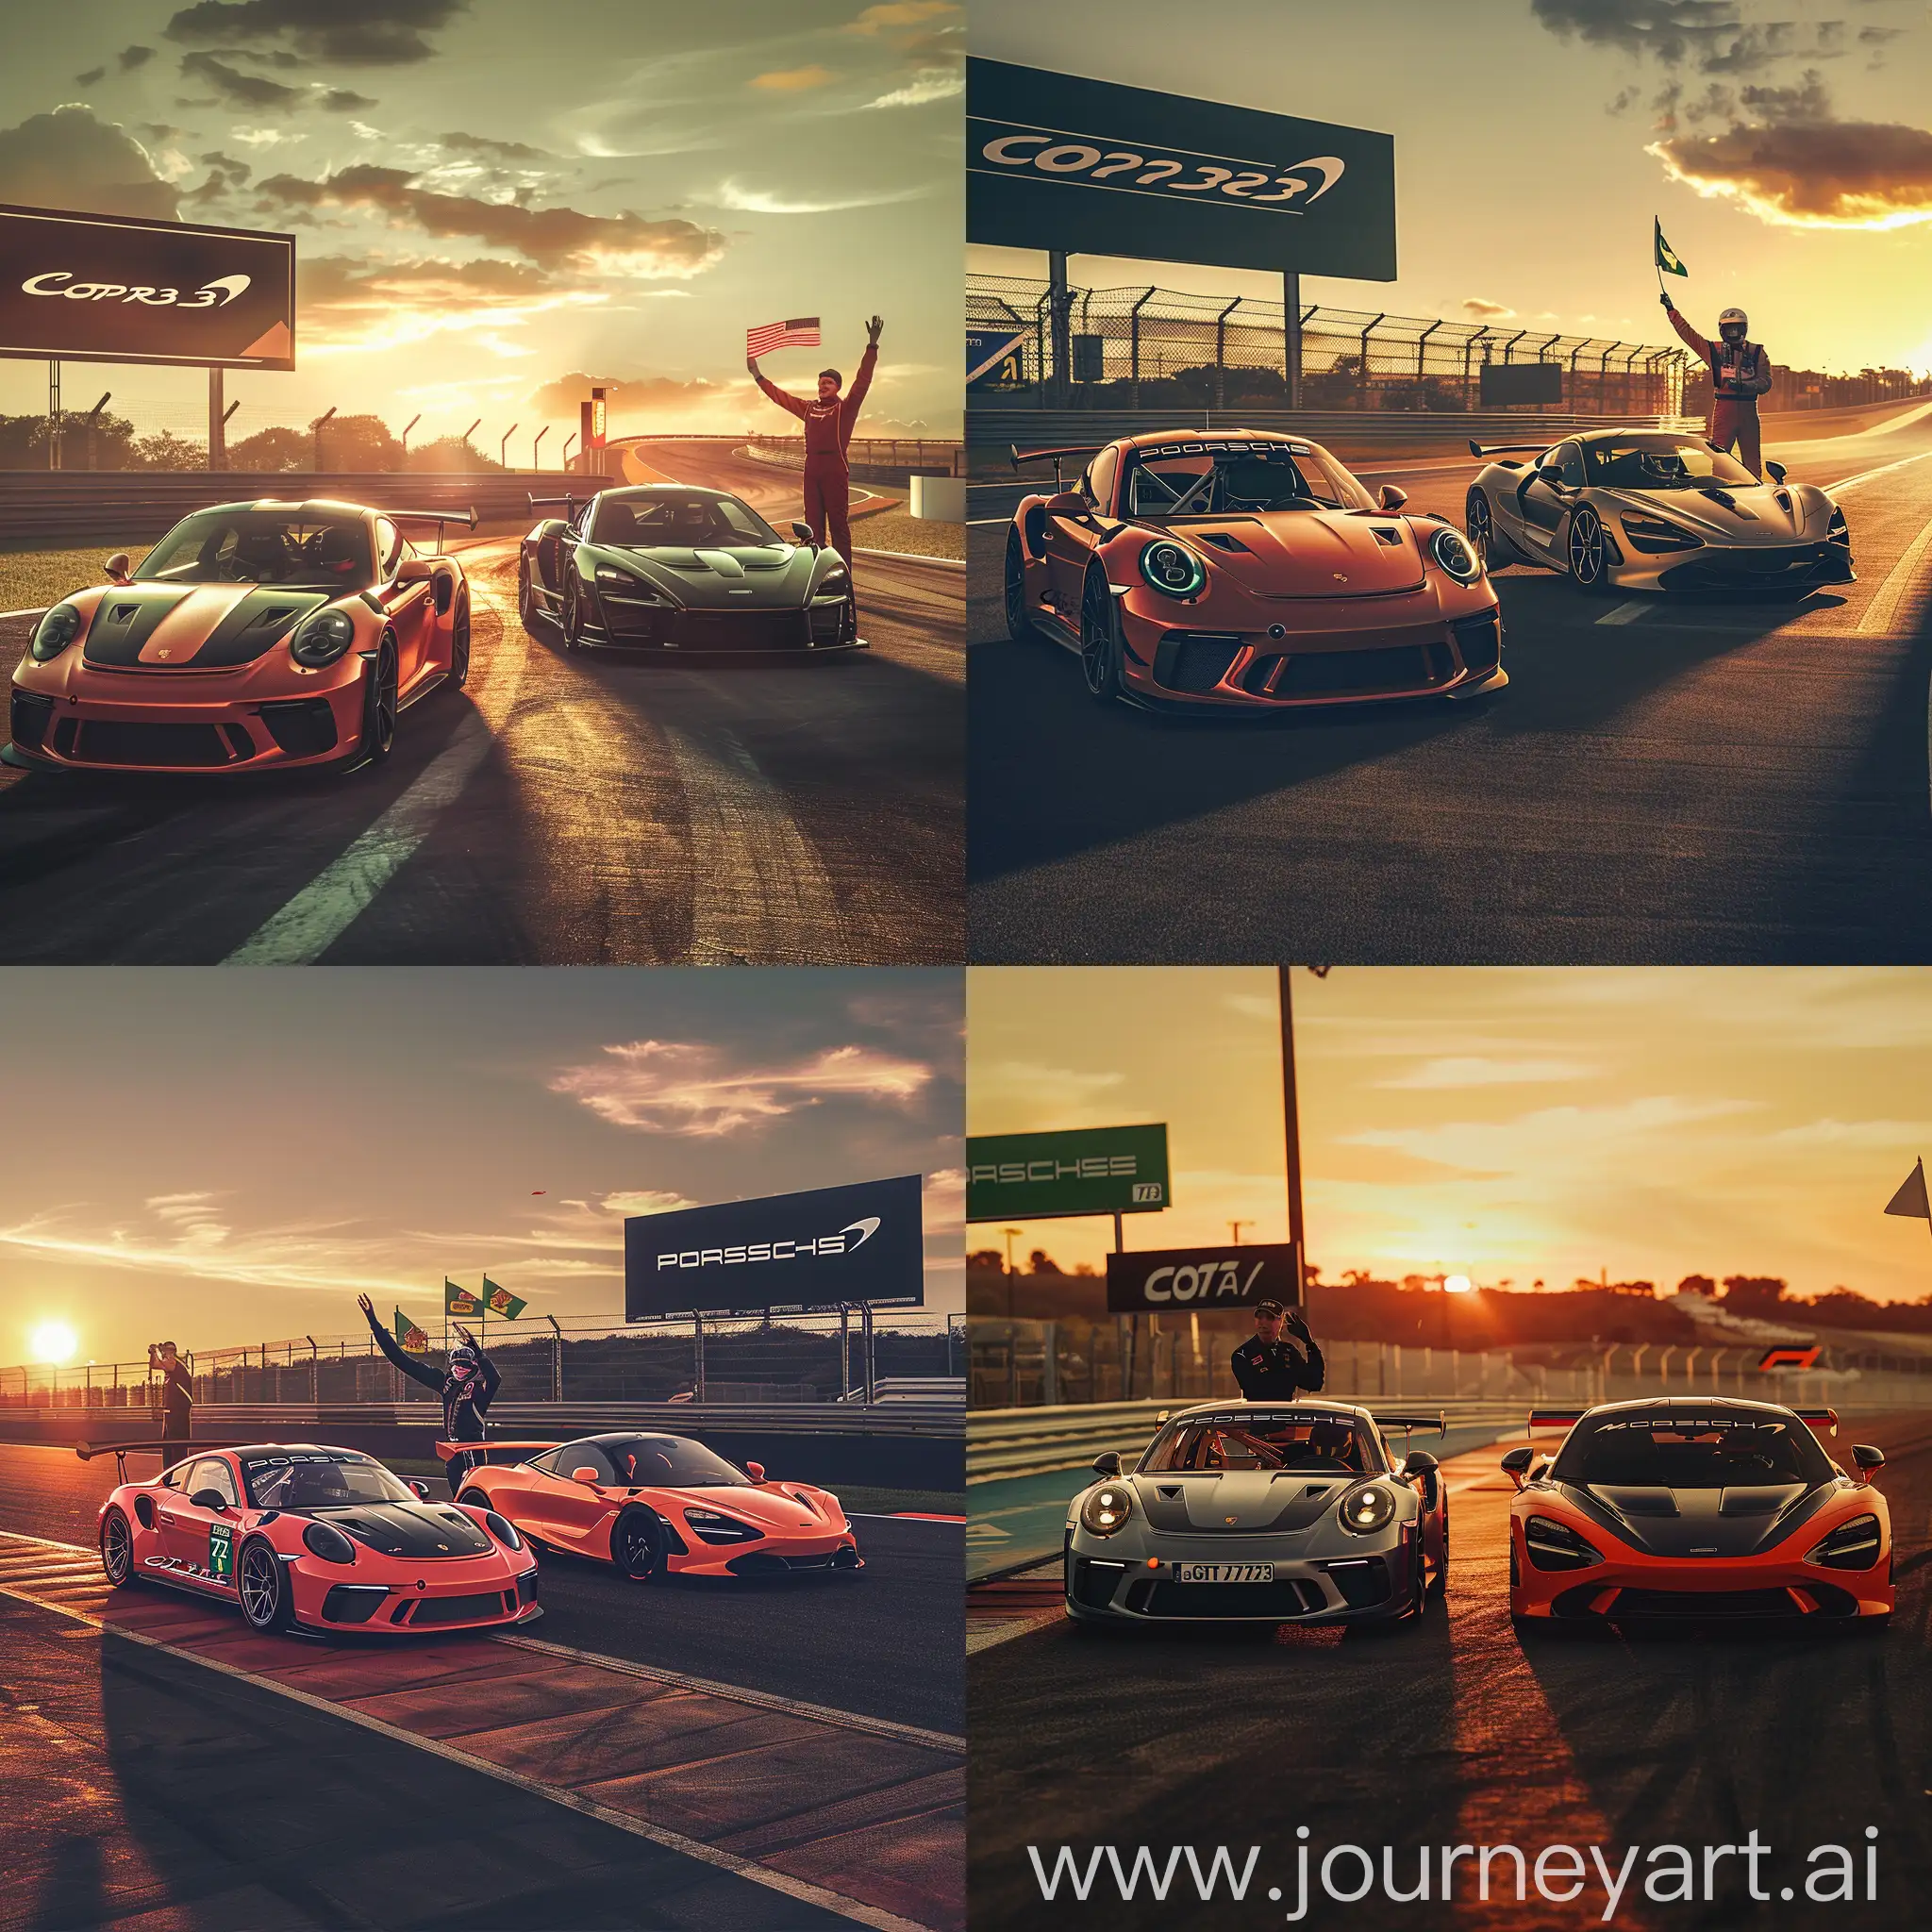 Porsche-911-GT3-RS-and-McLaren-720S-GT3-Racing-at-Sunset-on-COTA-Circuit